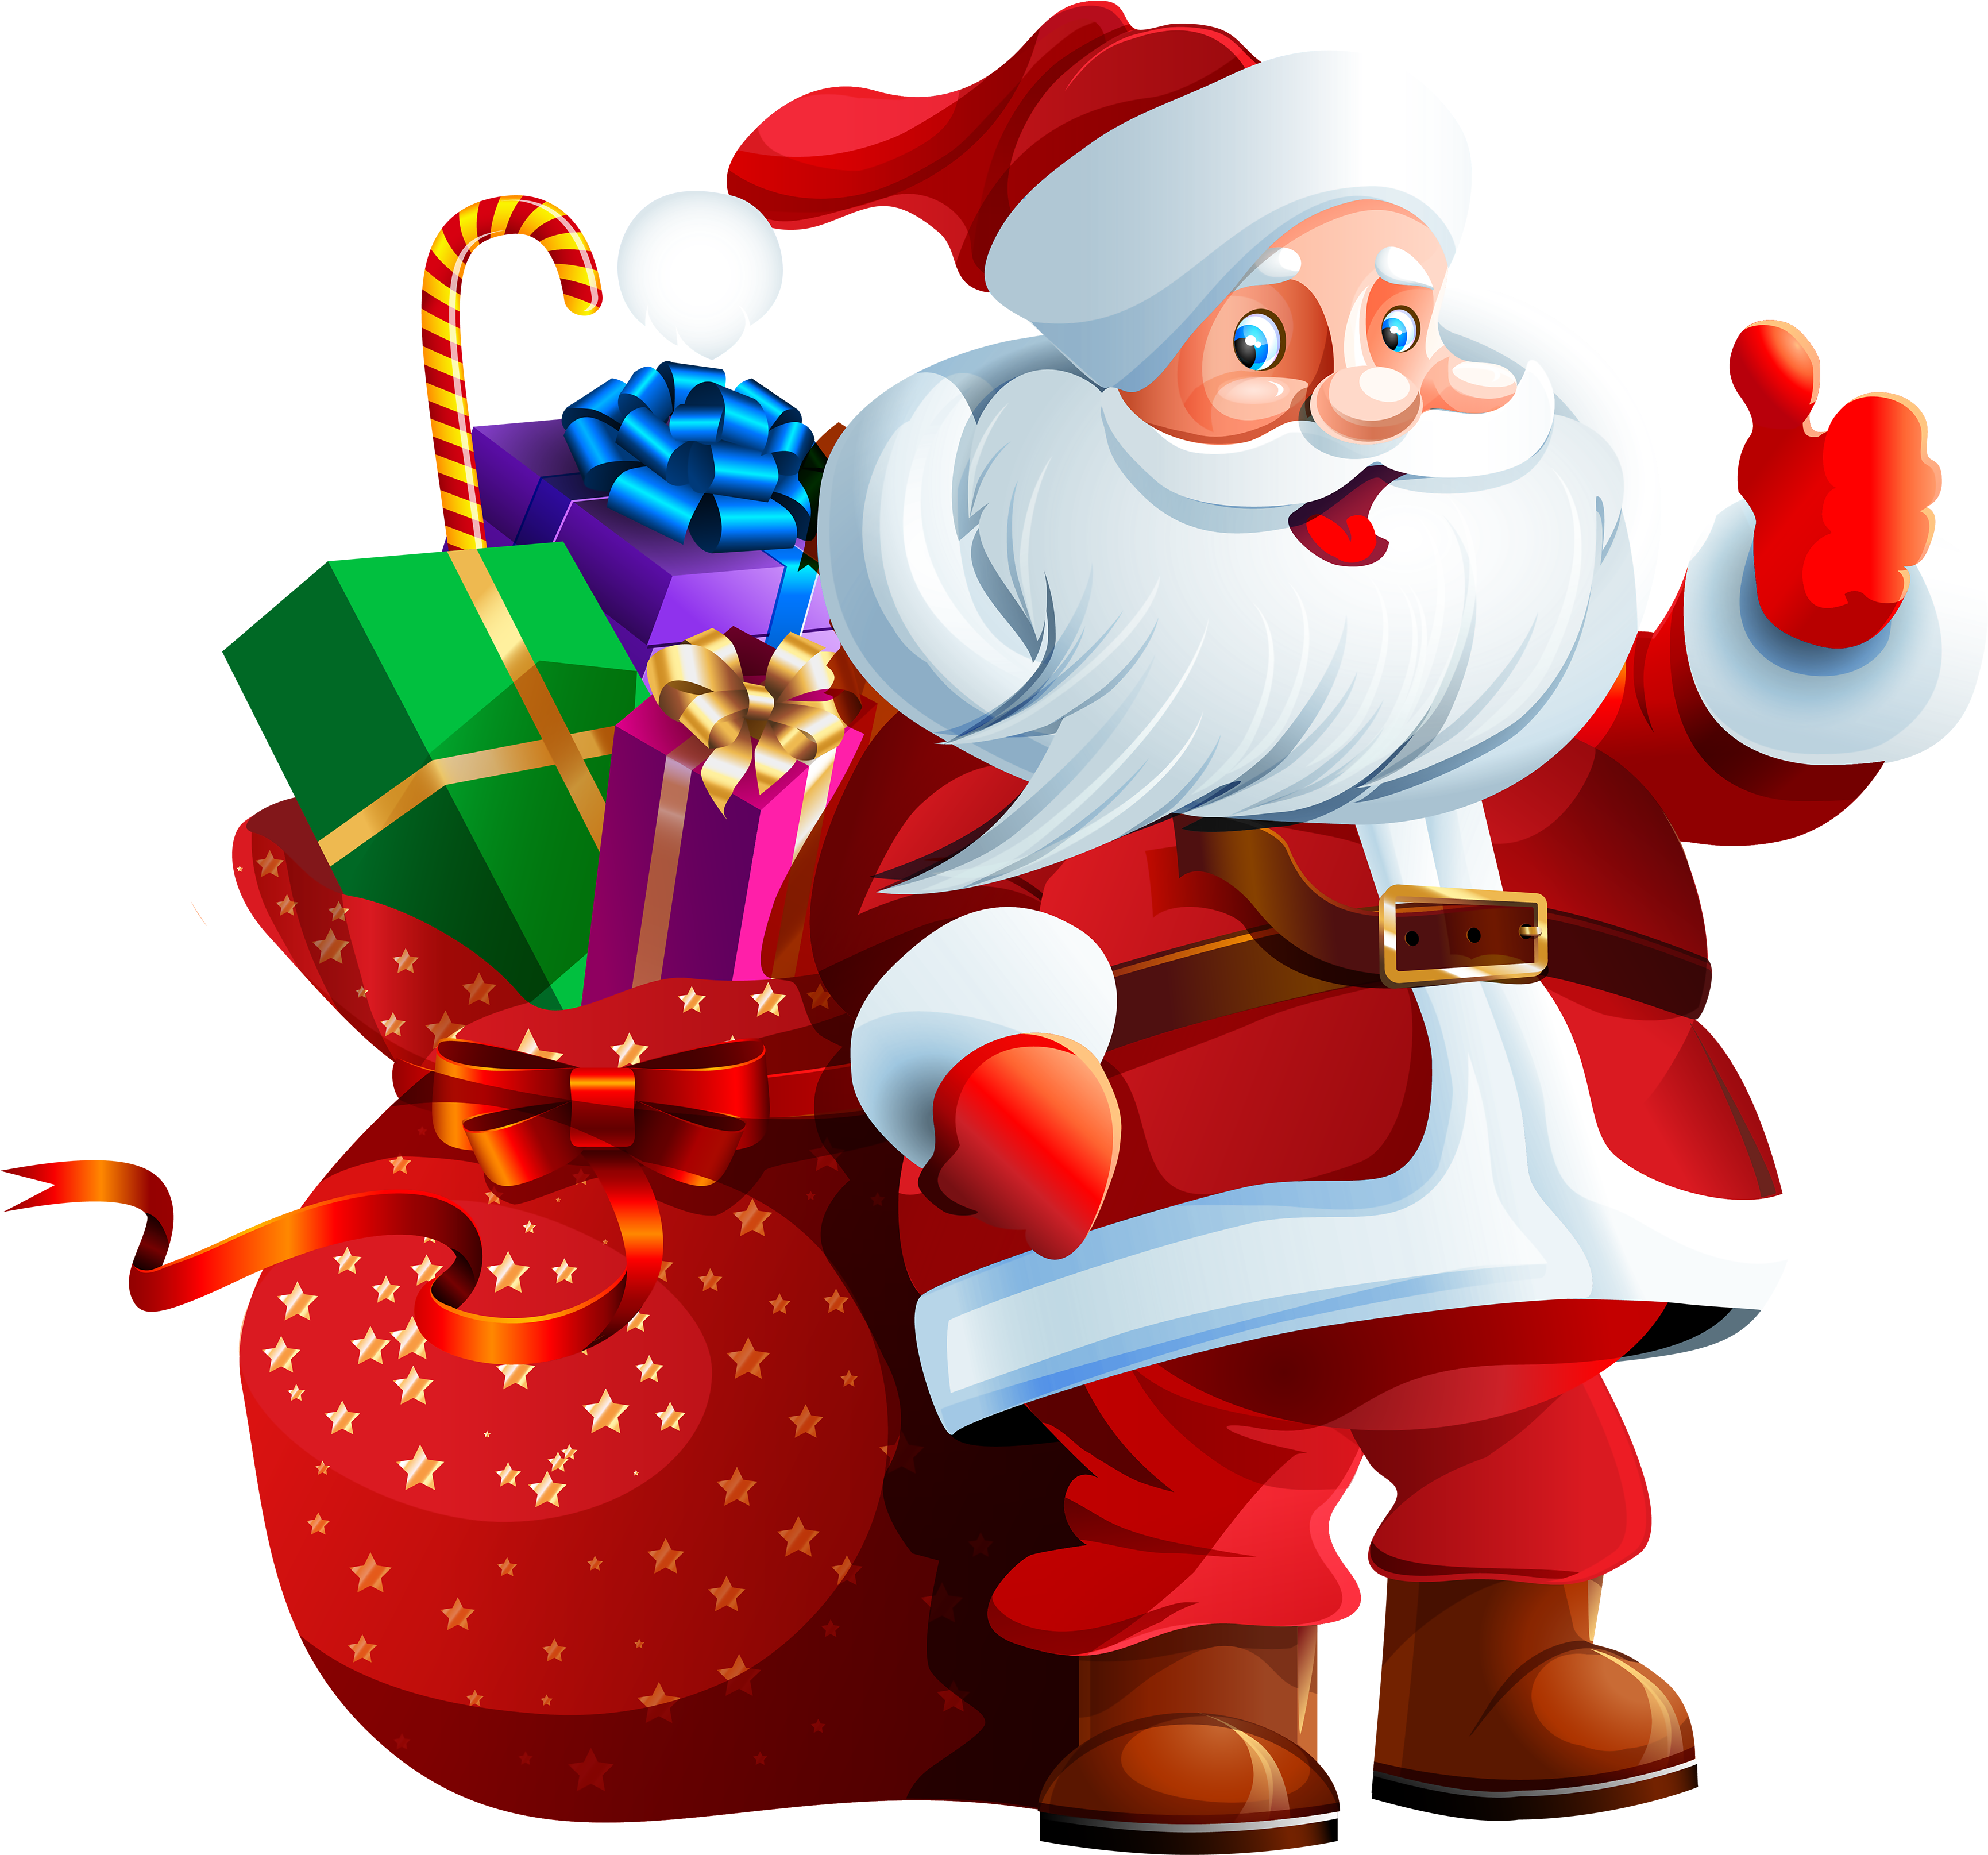 A Cartoon Of A Santa Claus Carrying A Bag Of Presents